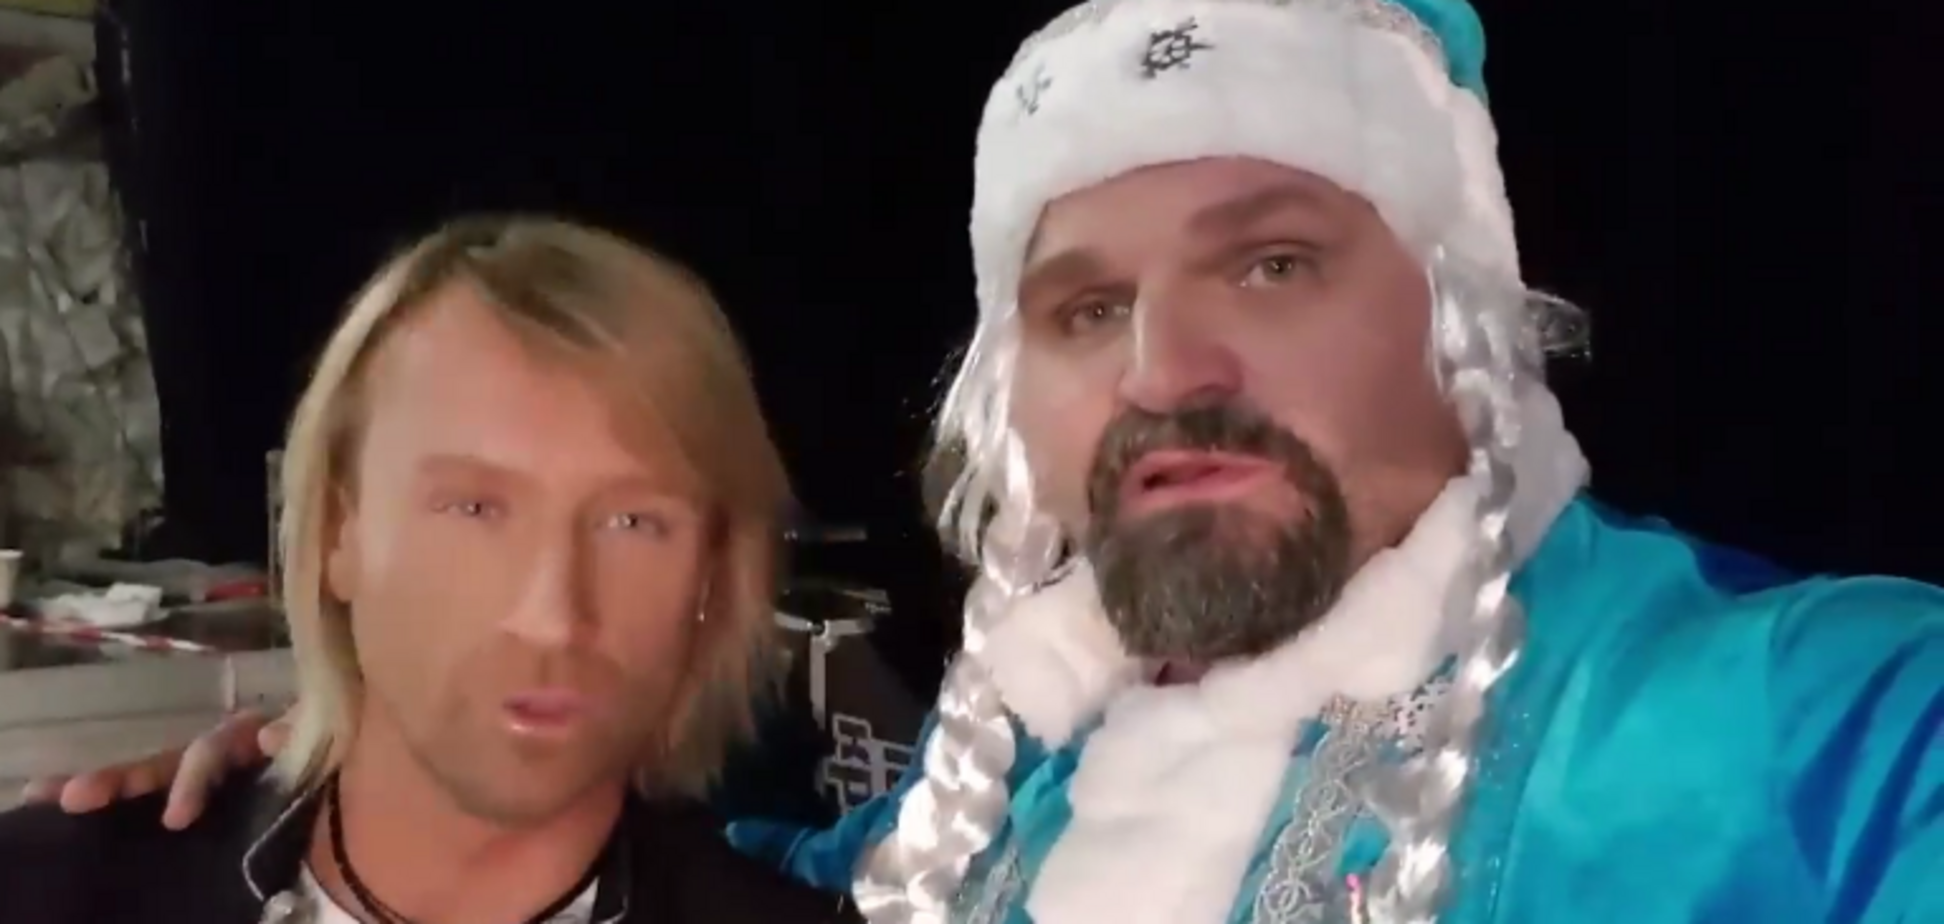 Вирастюк в костюме Снегурочки шокировал видео с украинским 'королем поп-музыки'